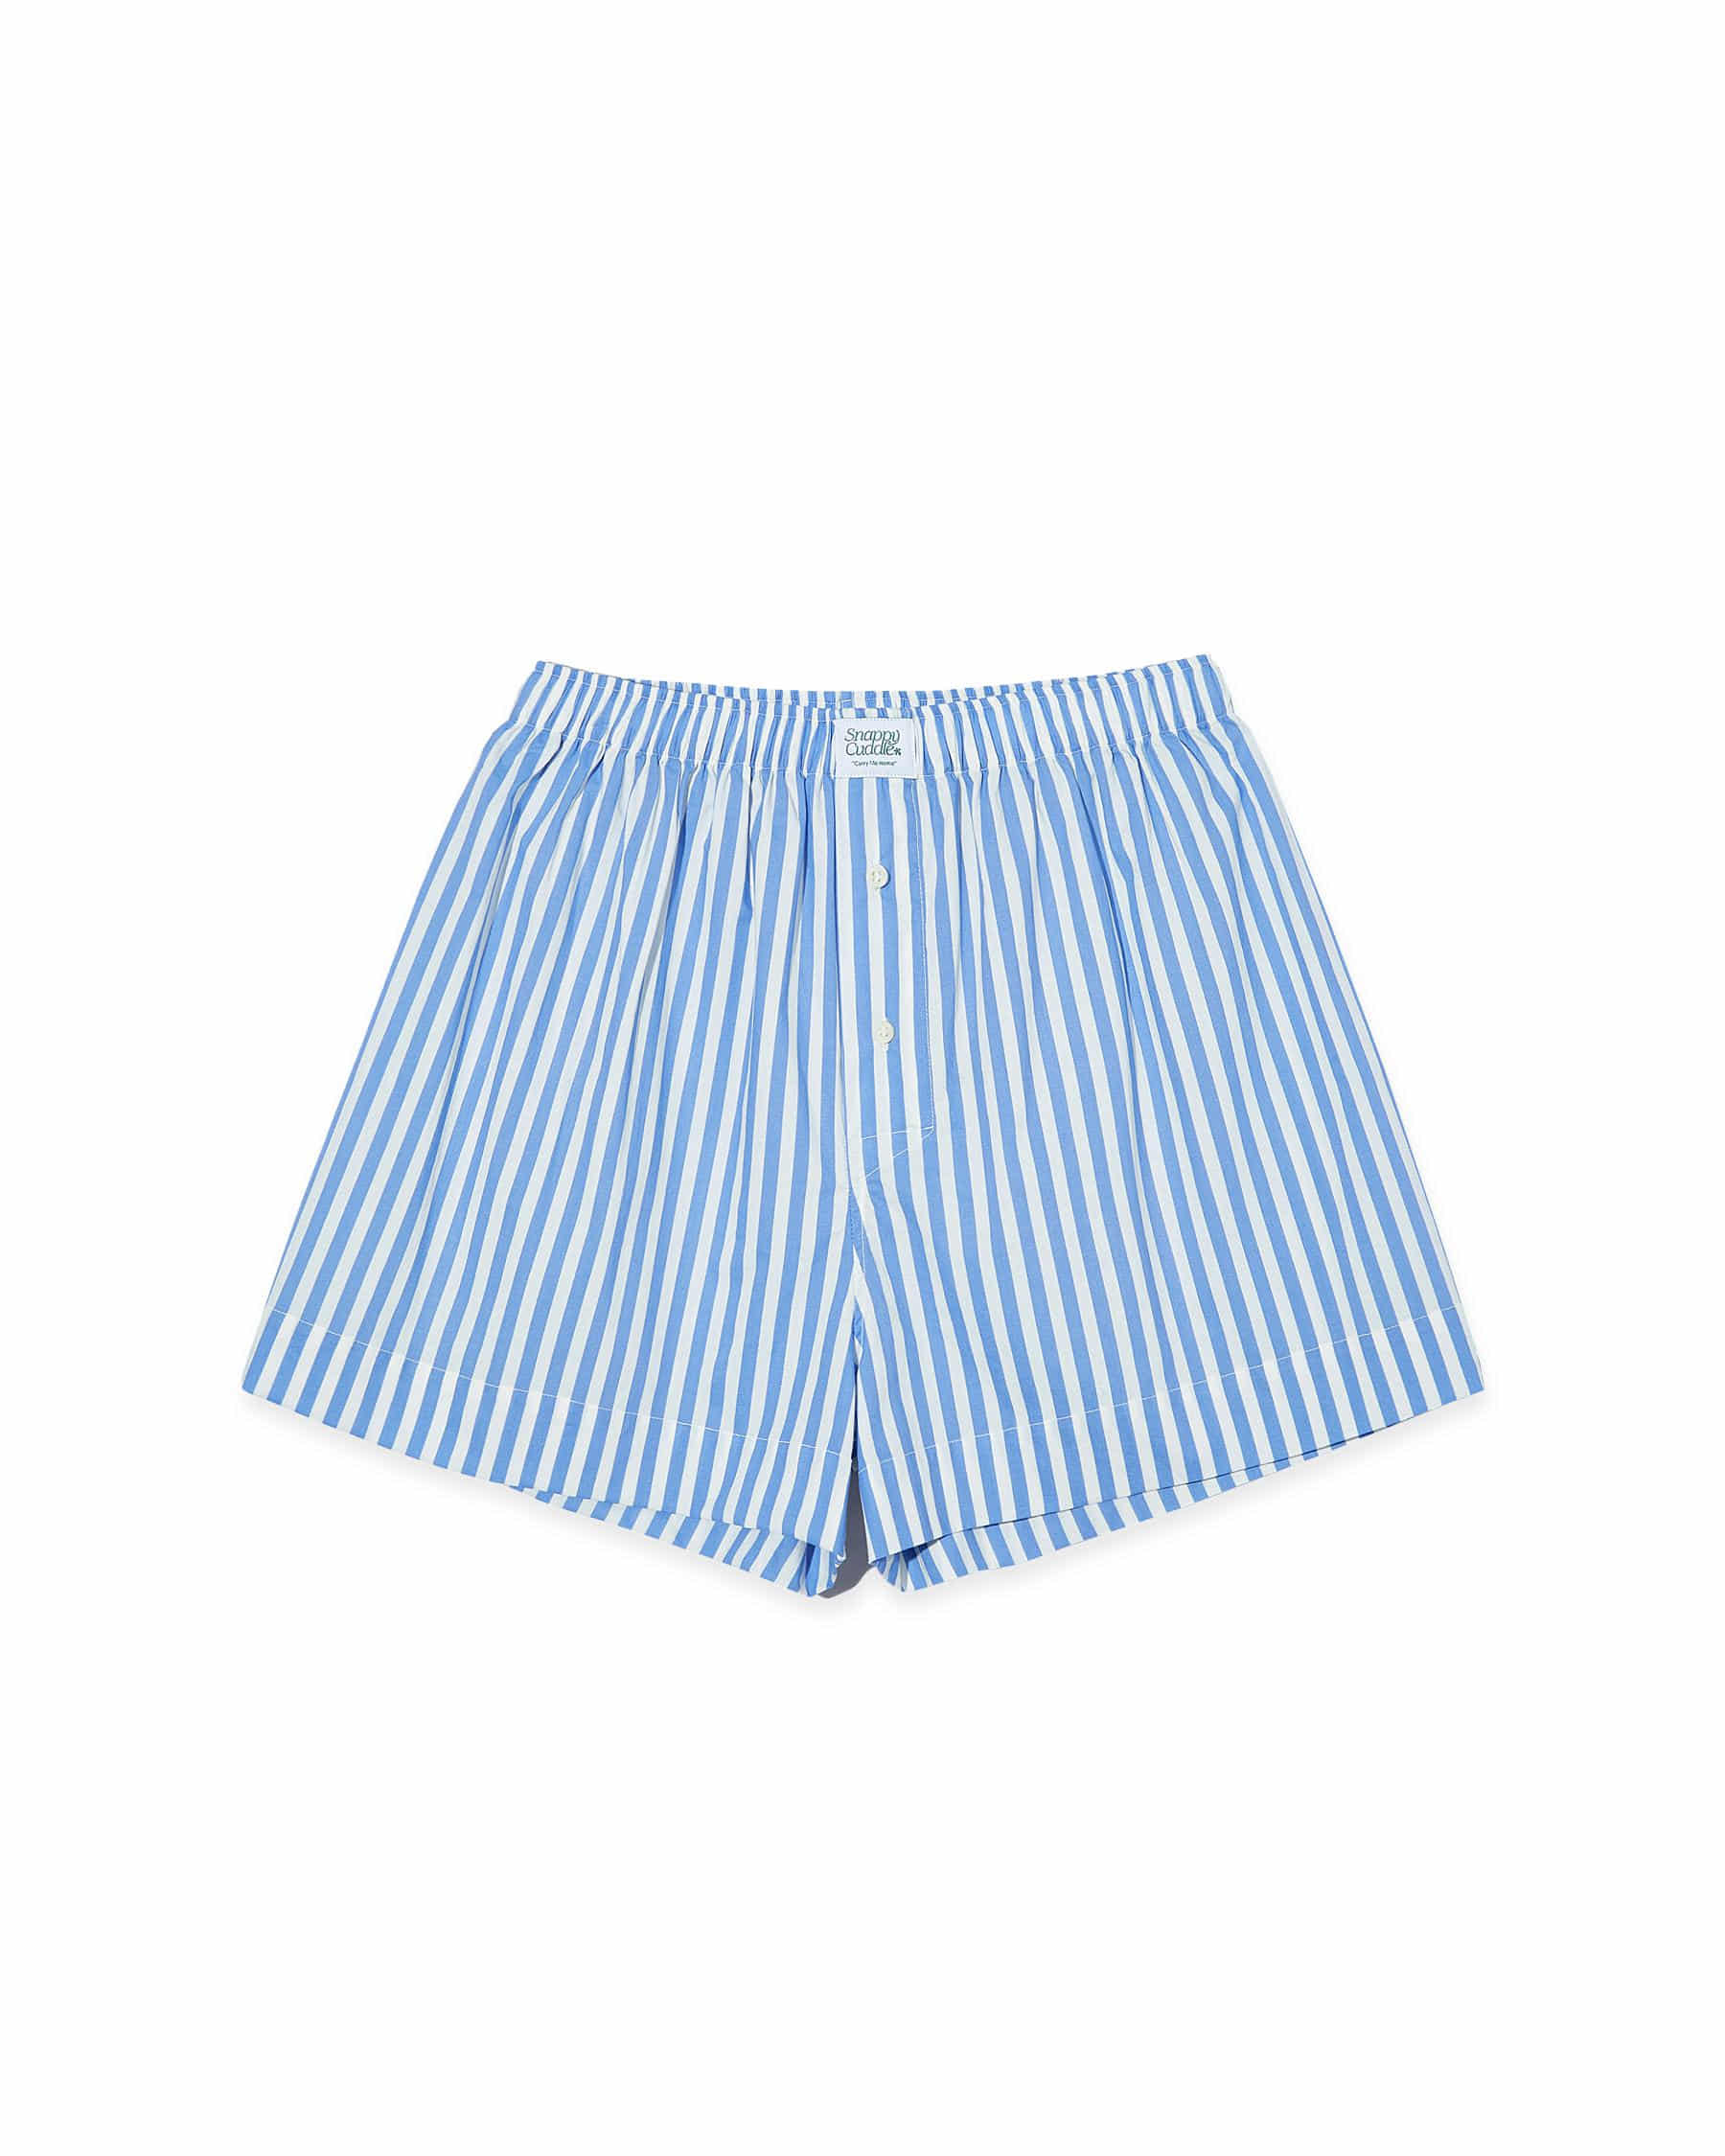 Steady Stripe Shorts (Serenity Blue)